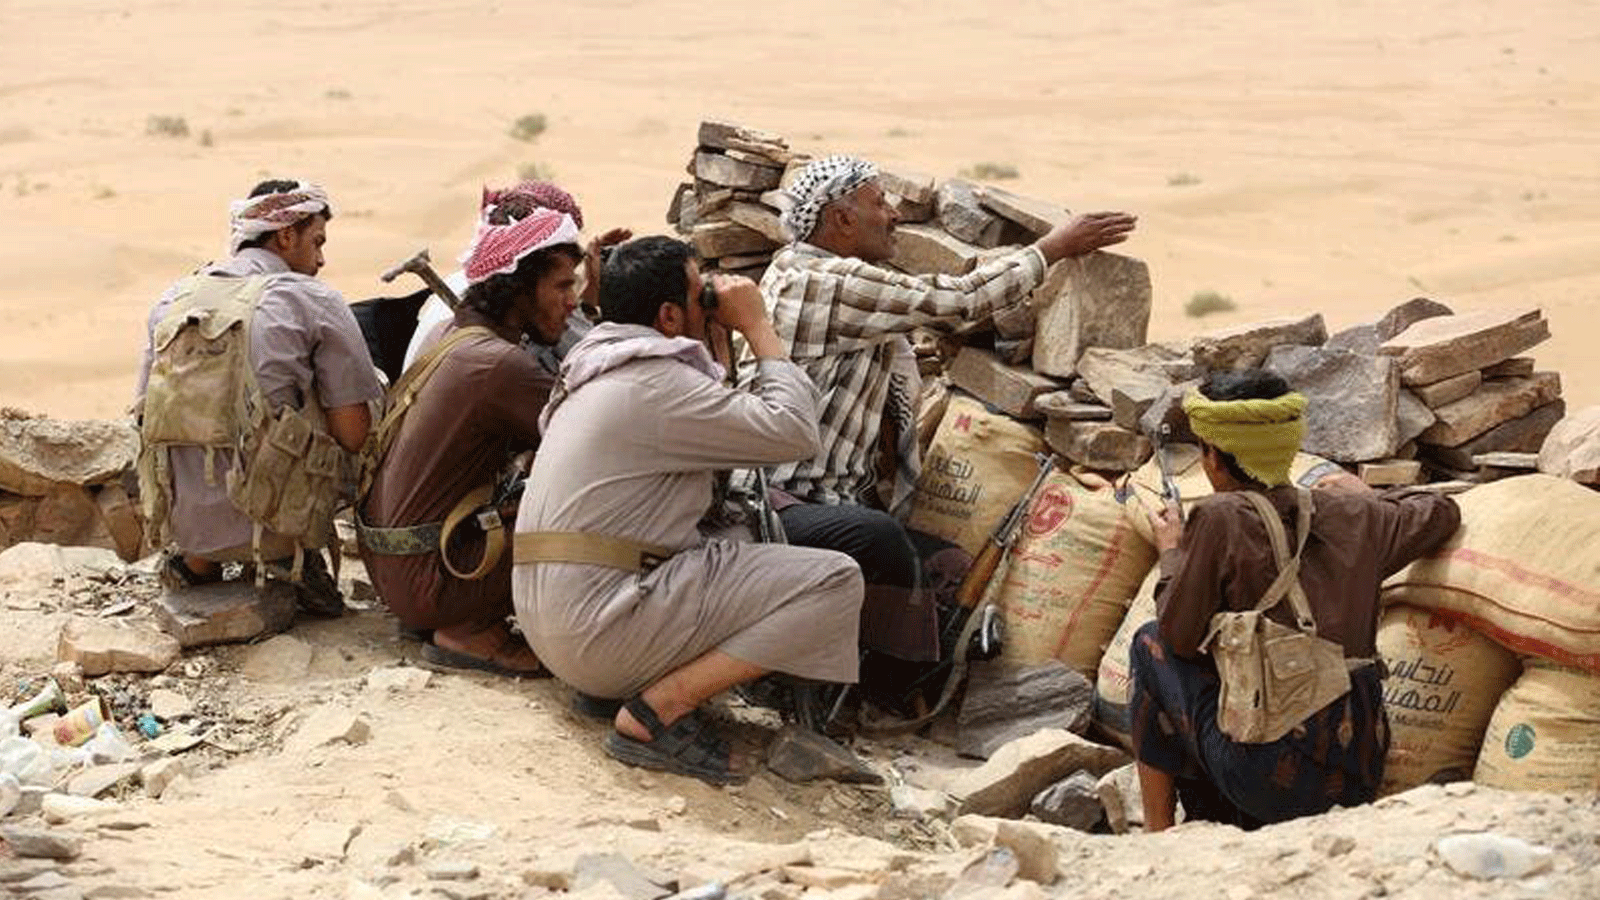 متمردون من الحوثيون اليمنيين المدعومين من إيران يقودون معركة شرسة للسيطرة على مدينة مأرب الغنية بالنفط